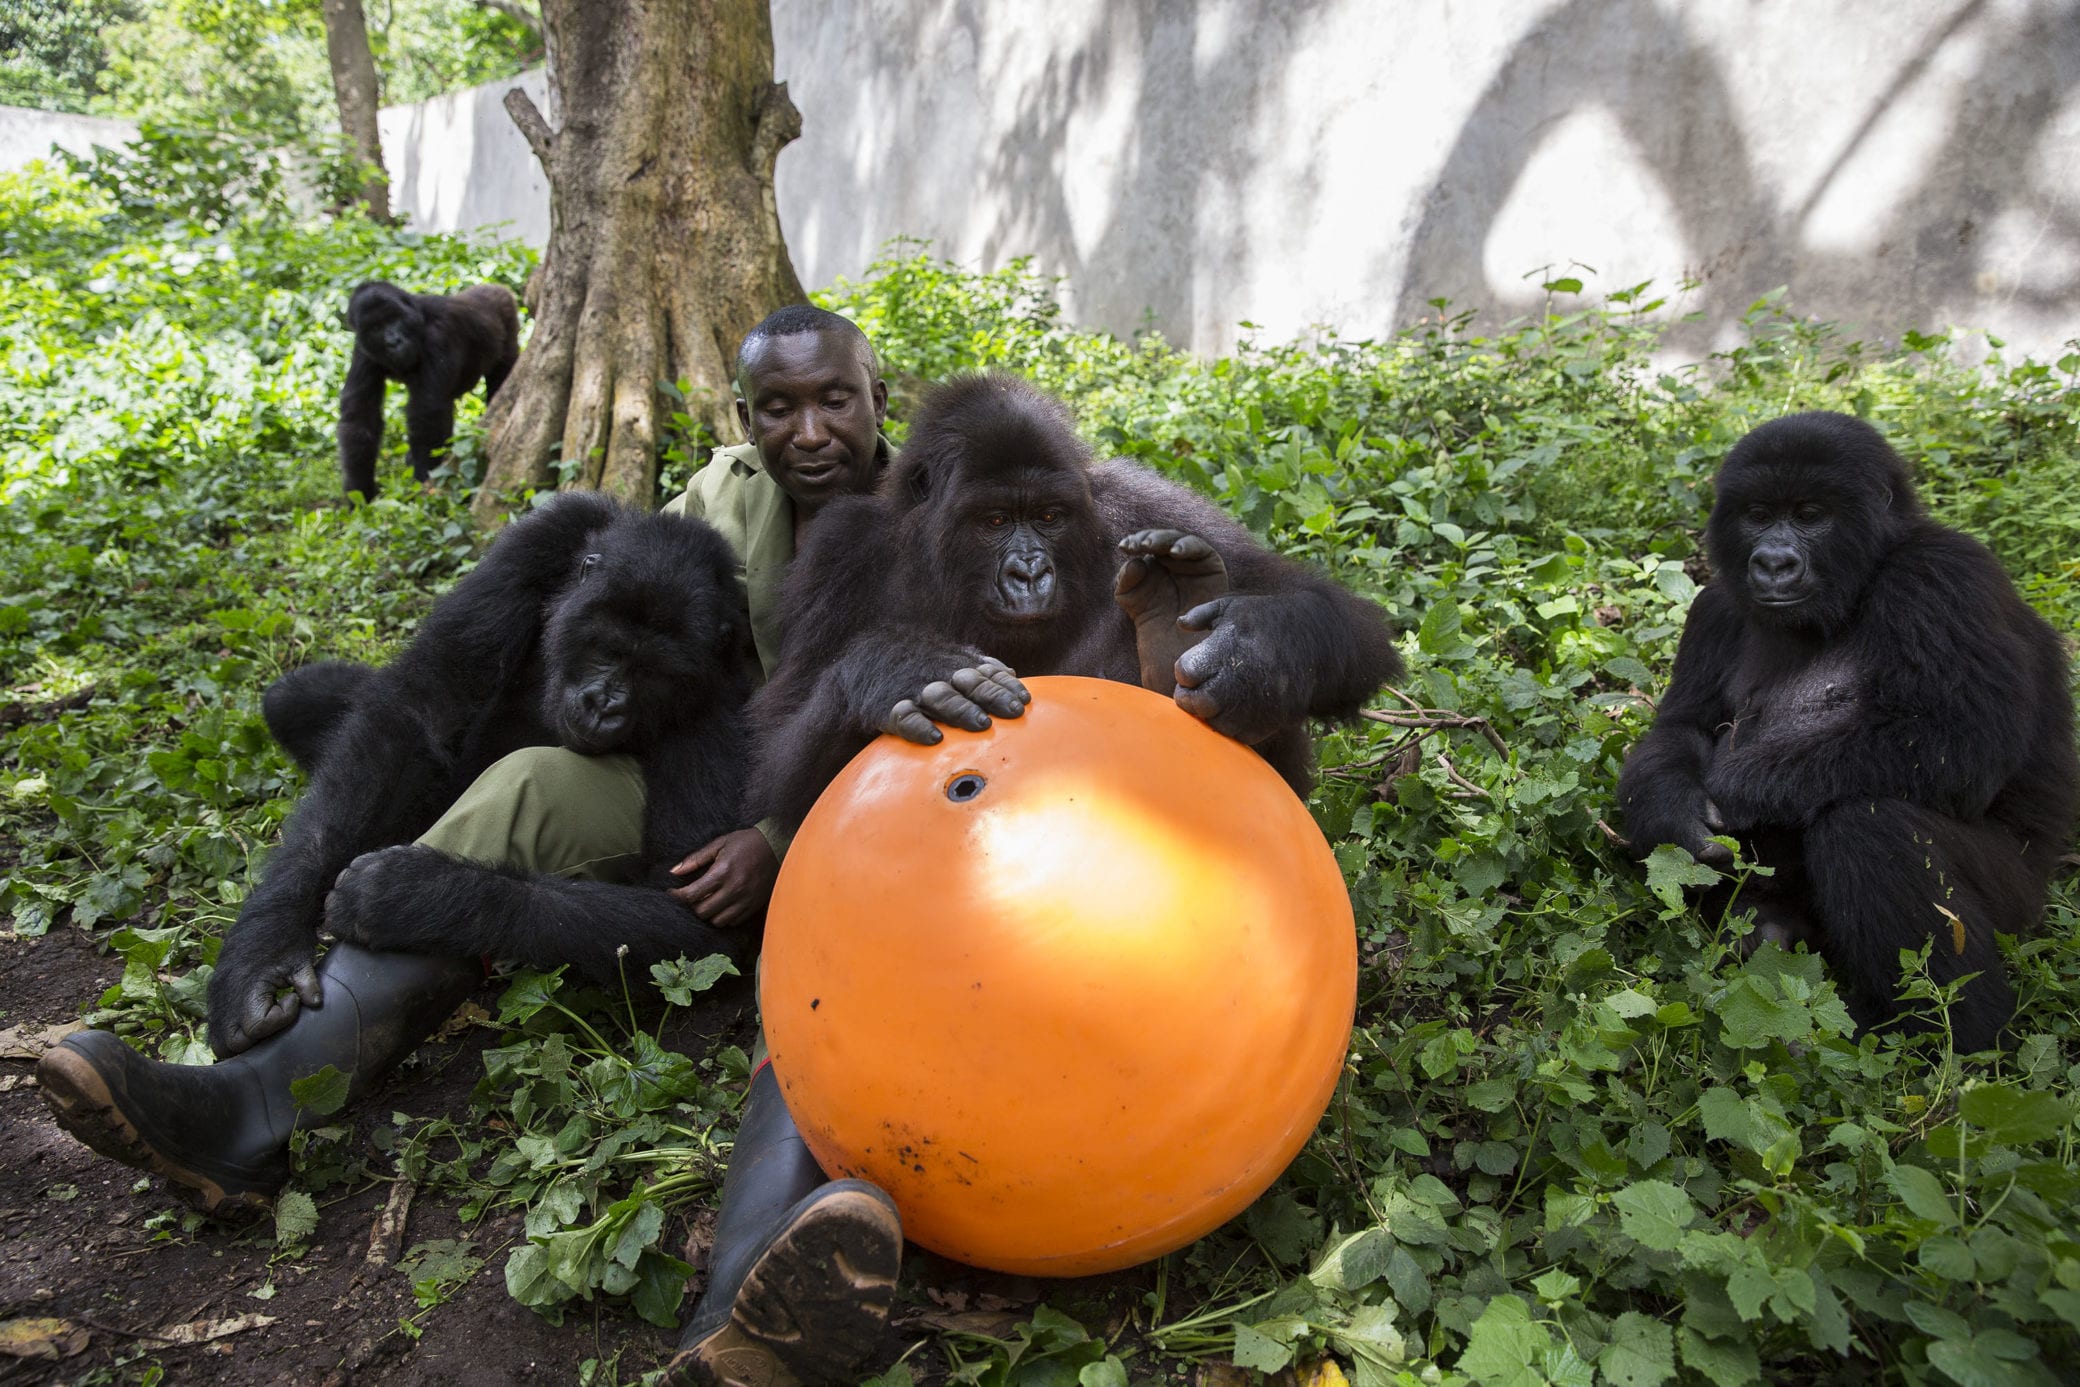 Andre and the Senkwekwe orphaned mountain gorillas